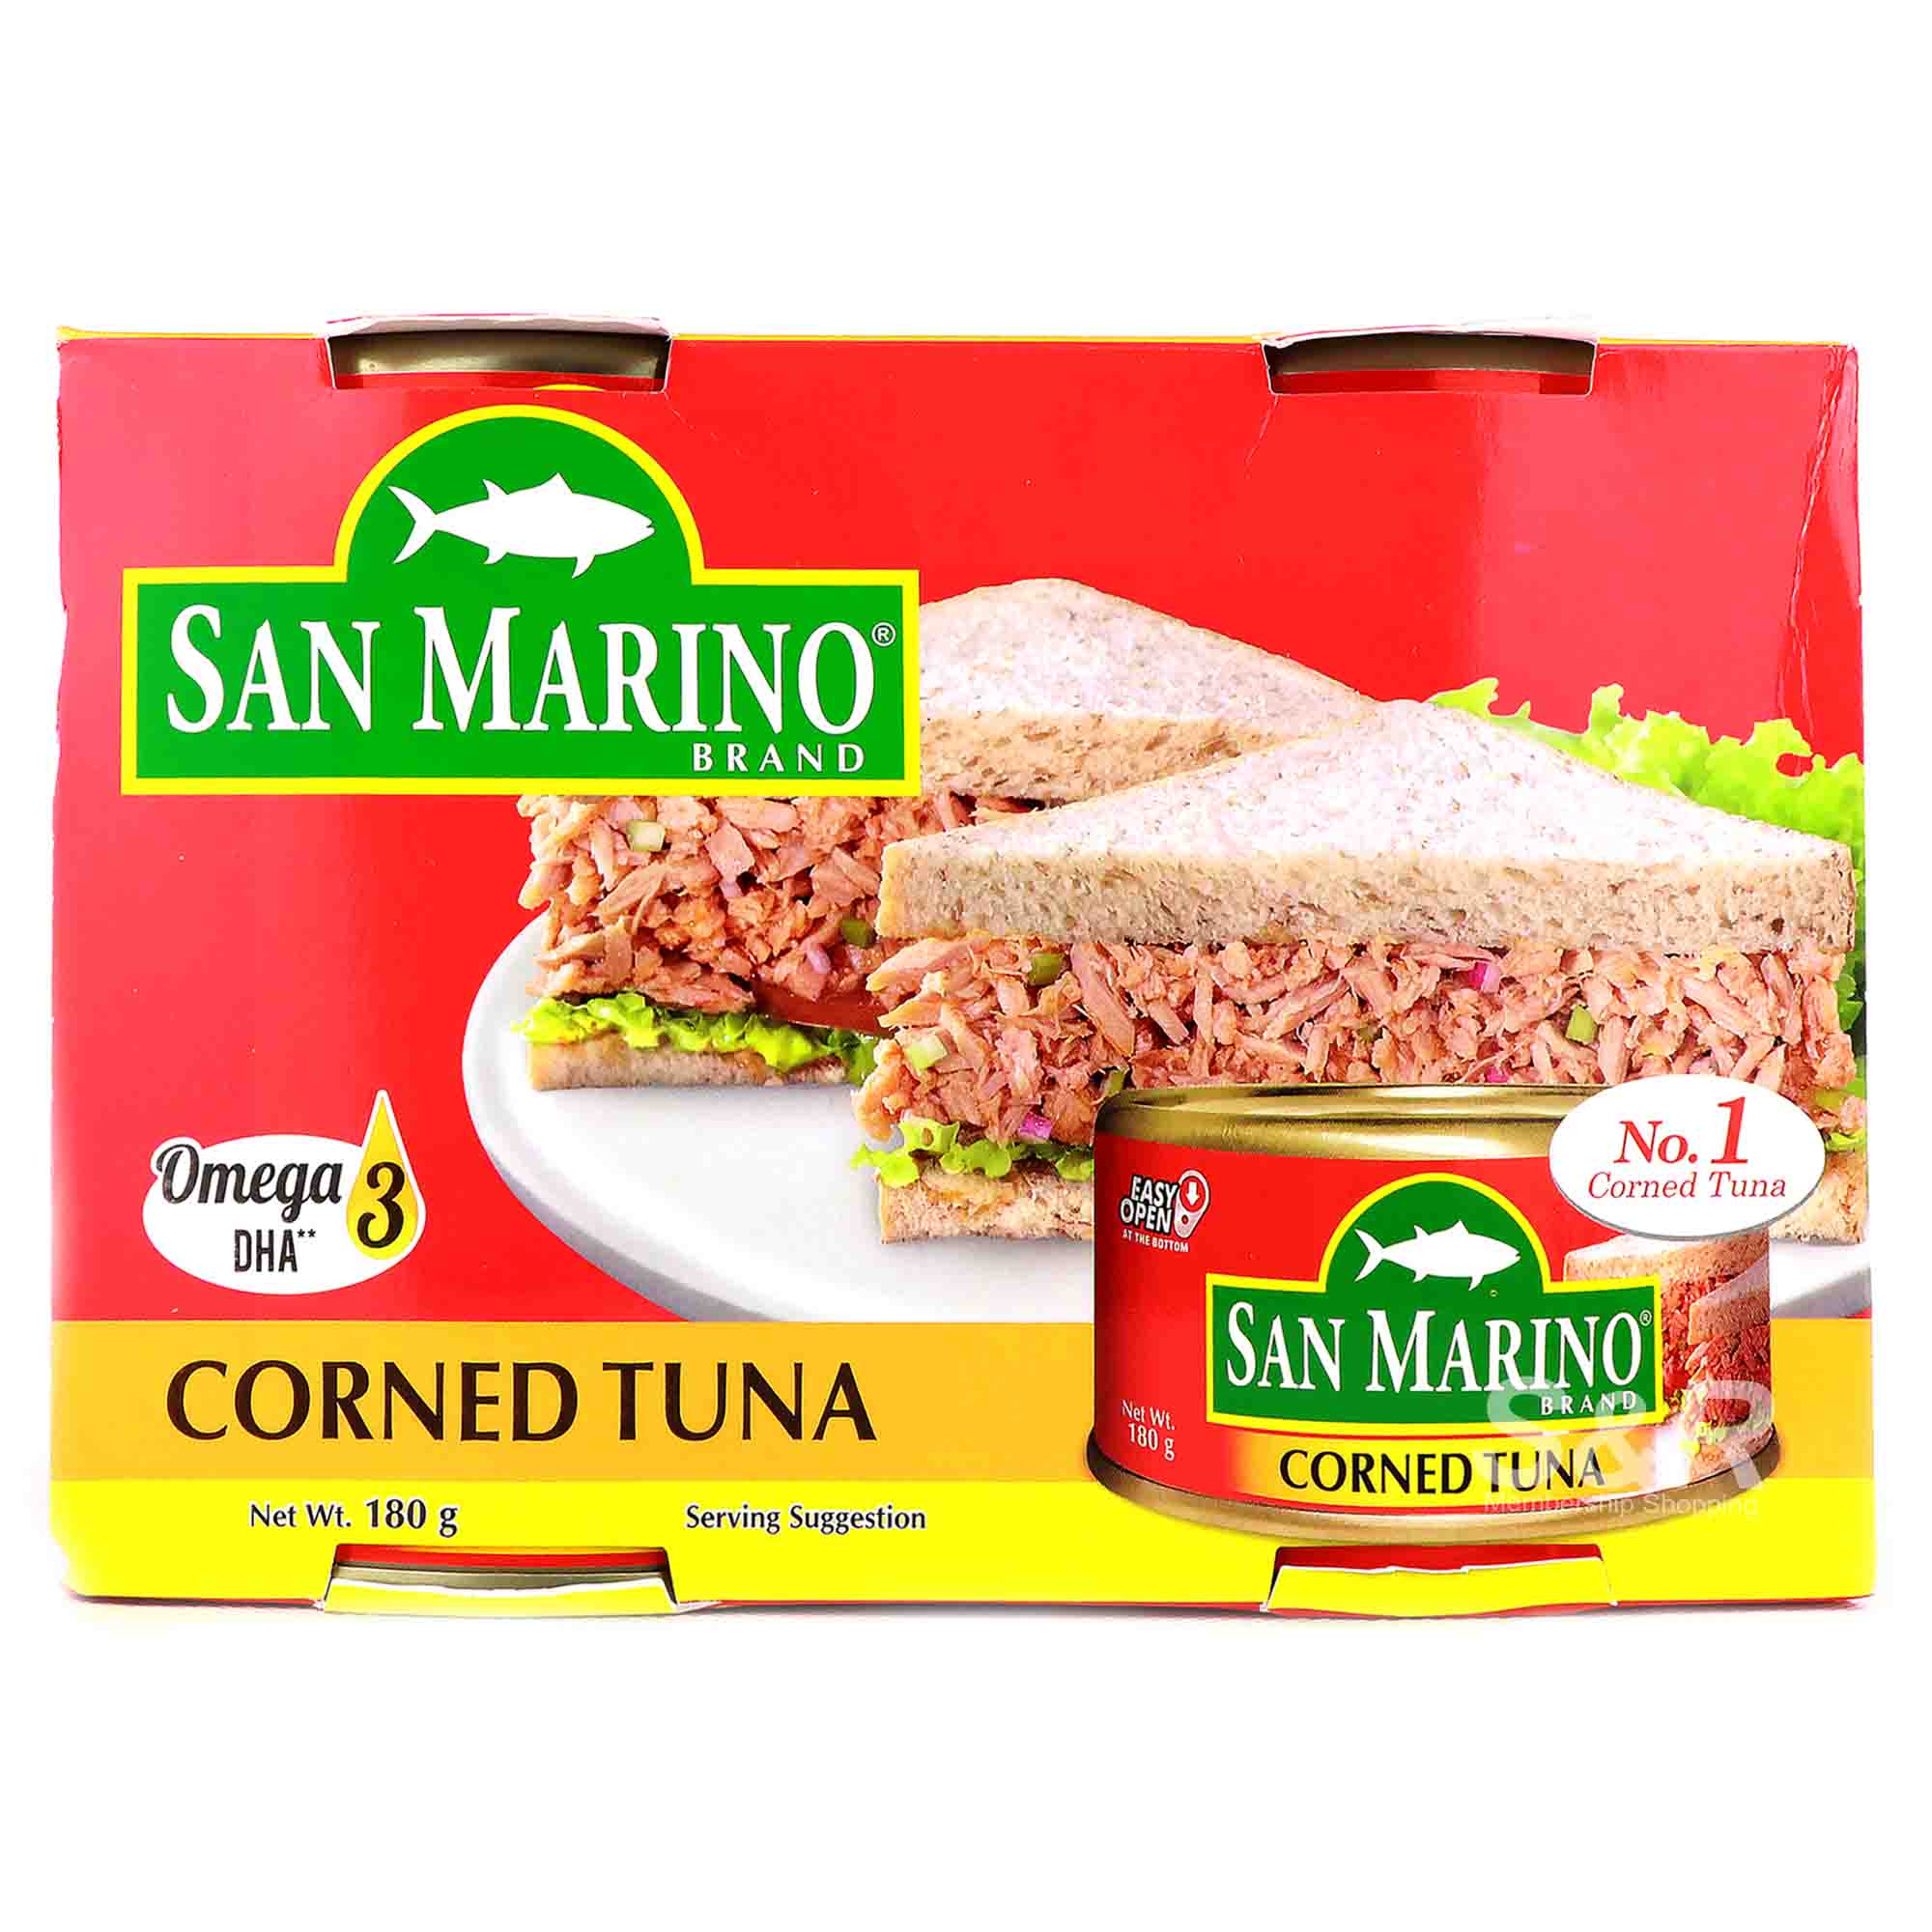 CDO San Marino Corned Tuna 6 cans